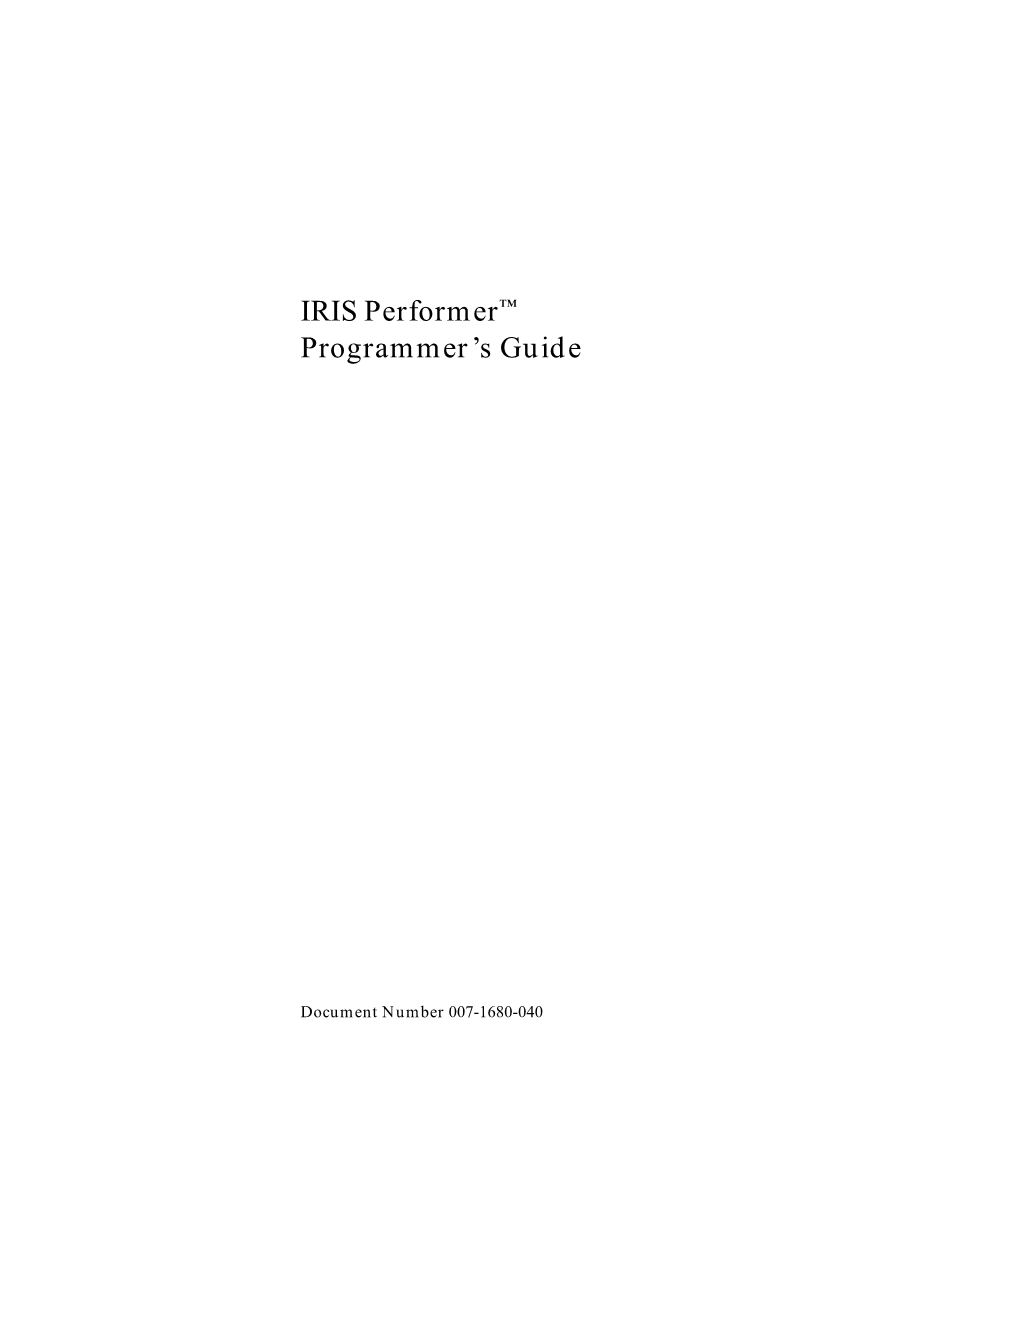 IRIS Performer™ Programmer's Guide